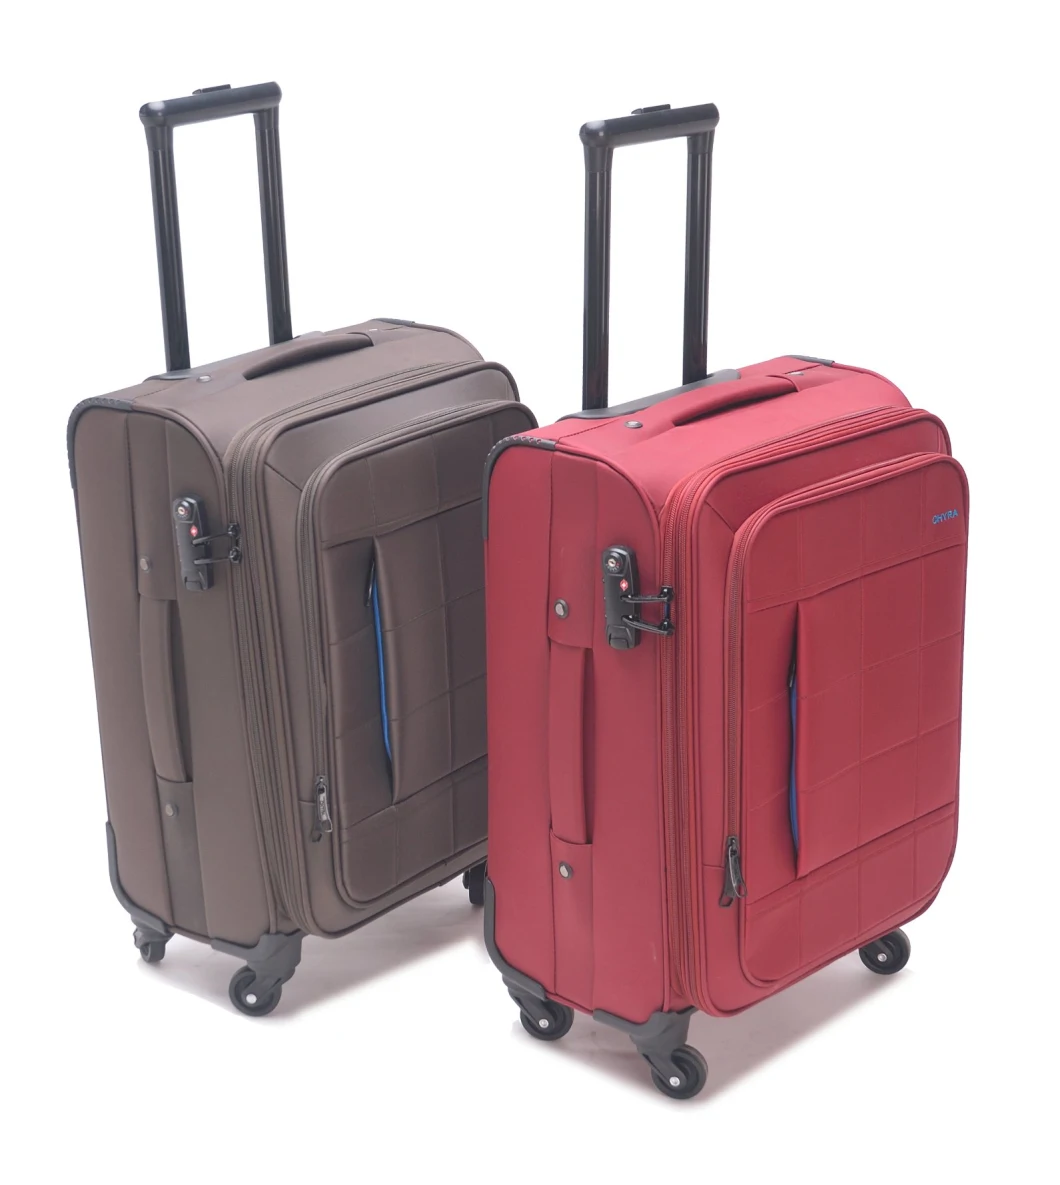 Fashionable Oxford Trolley Luggage Tsa Lock Luggage with High Quality Mute Wheels Luggage